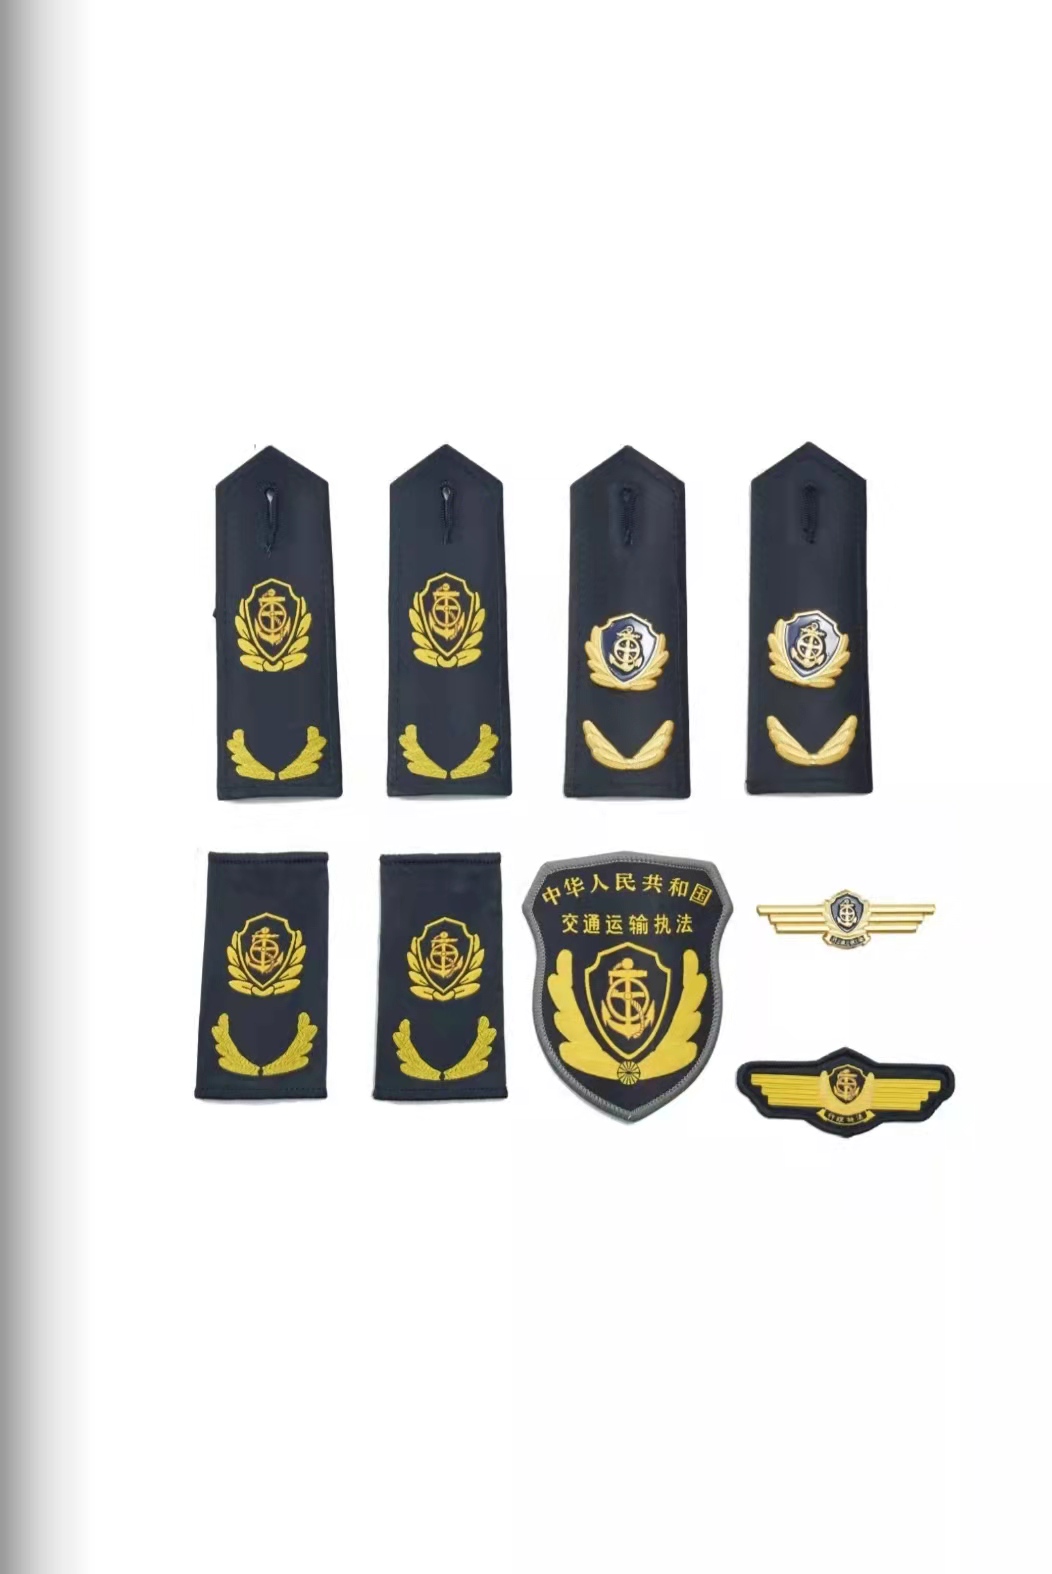 阿拉善六部门统一交通运输执法服装标志